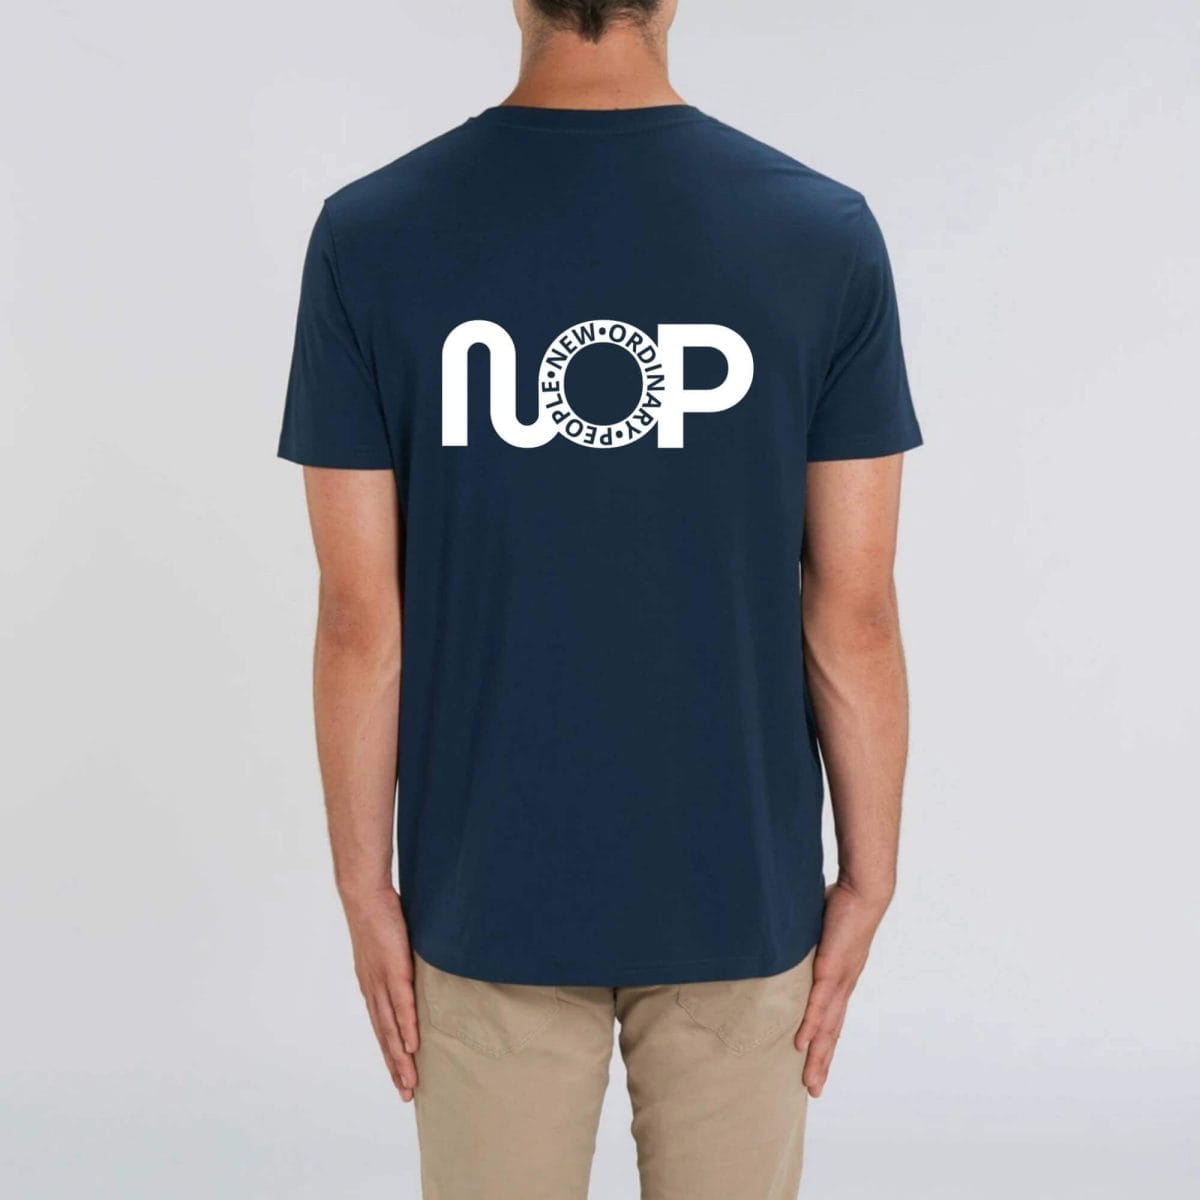 NOP Back T-shirt